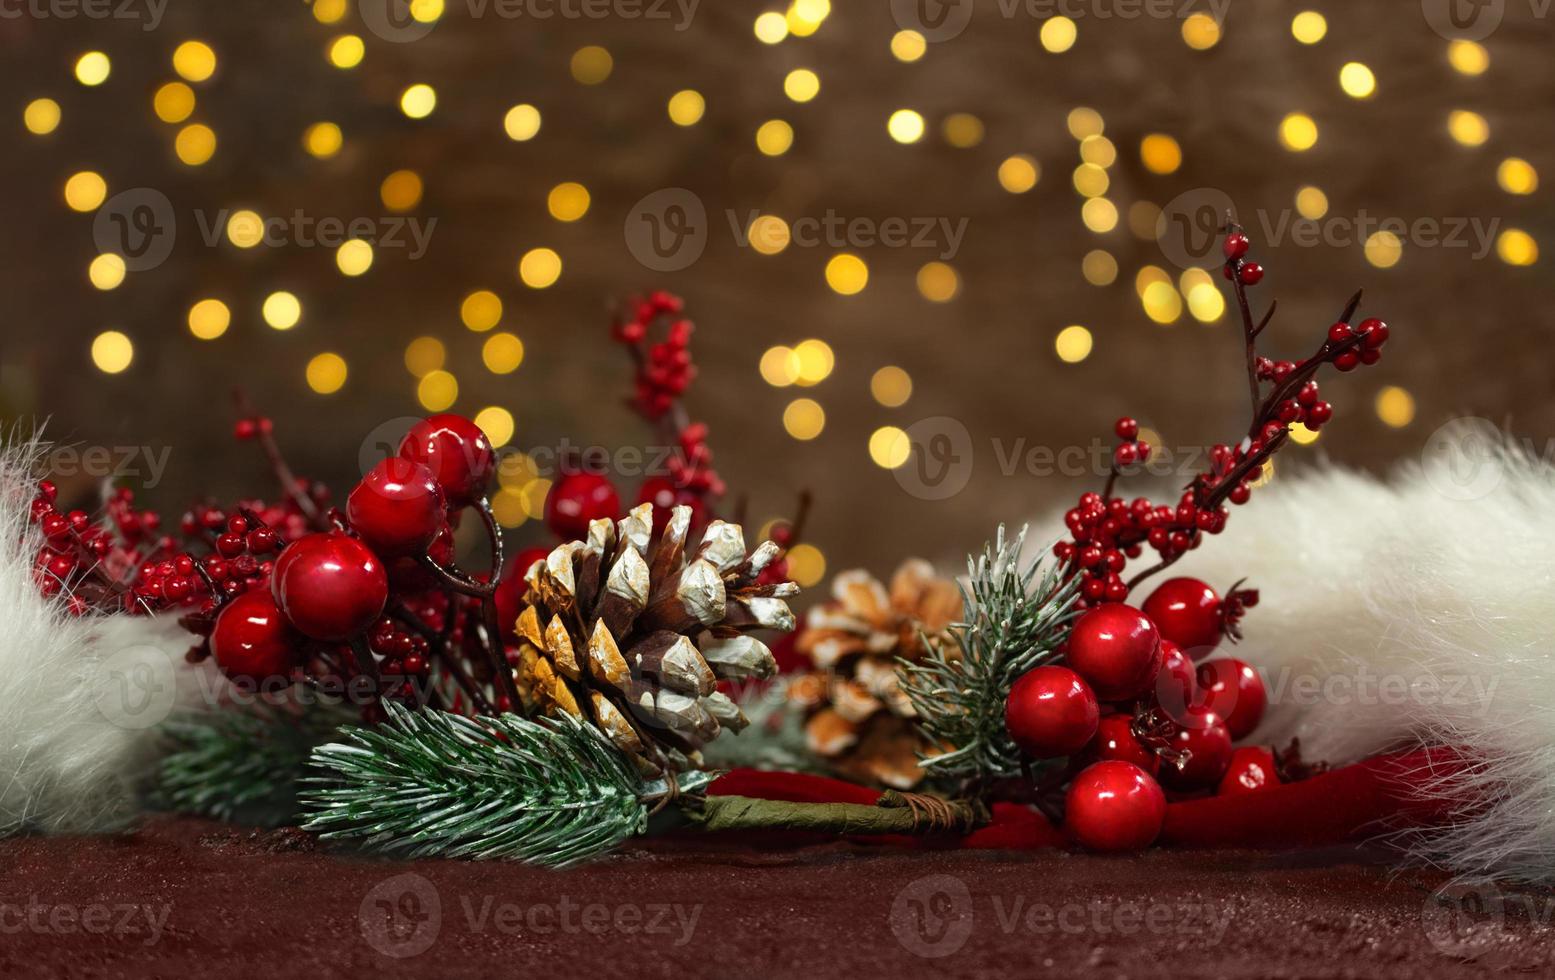 Fichtenzweige mit roten Beeren und Tannenzapfen auf einem roten Weihnachtsmann-Hut mit Neujahrslichtern im Rücken. unscharfer Hintergrund. Weihnachtskarte foto